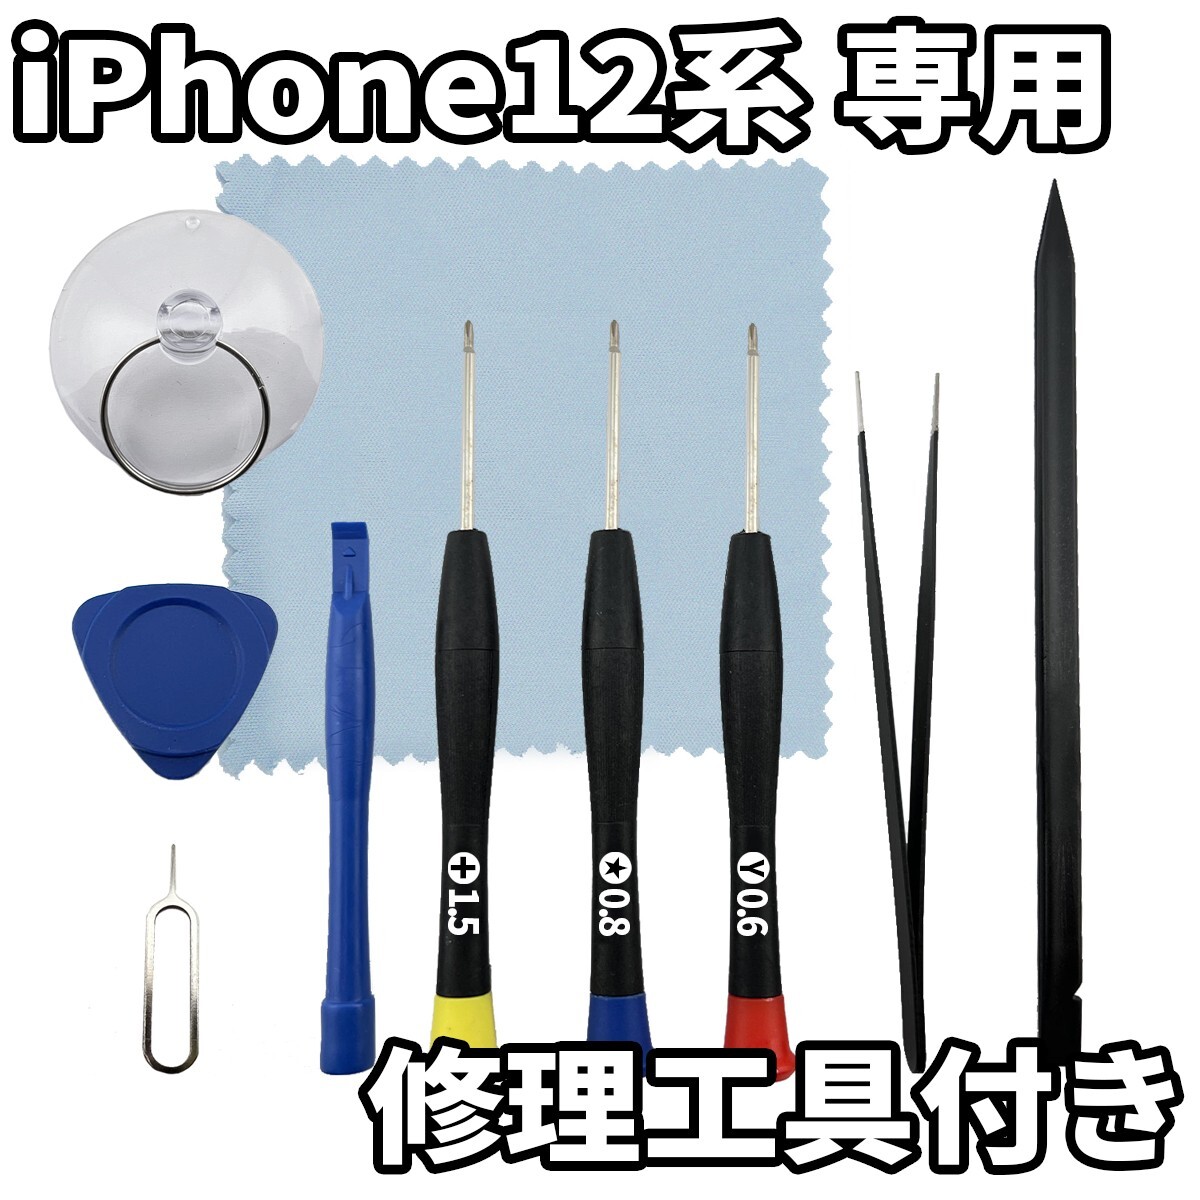 フロントパネル iPhone12 Incellコピーパネル 高品質 防水テープ 修理工具 互換 液晶 修理 iphone ガラス割れ 画面割れ ディスプレイの画像4